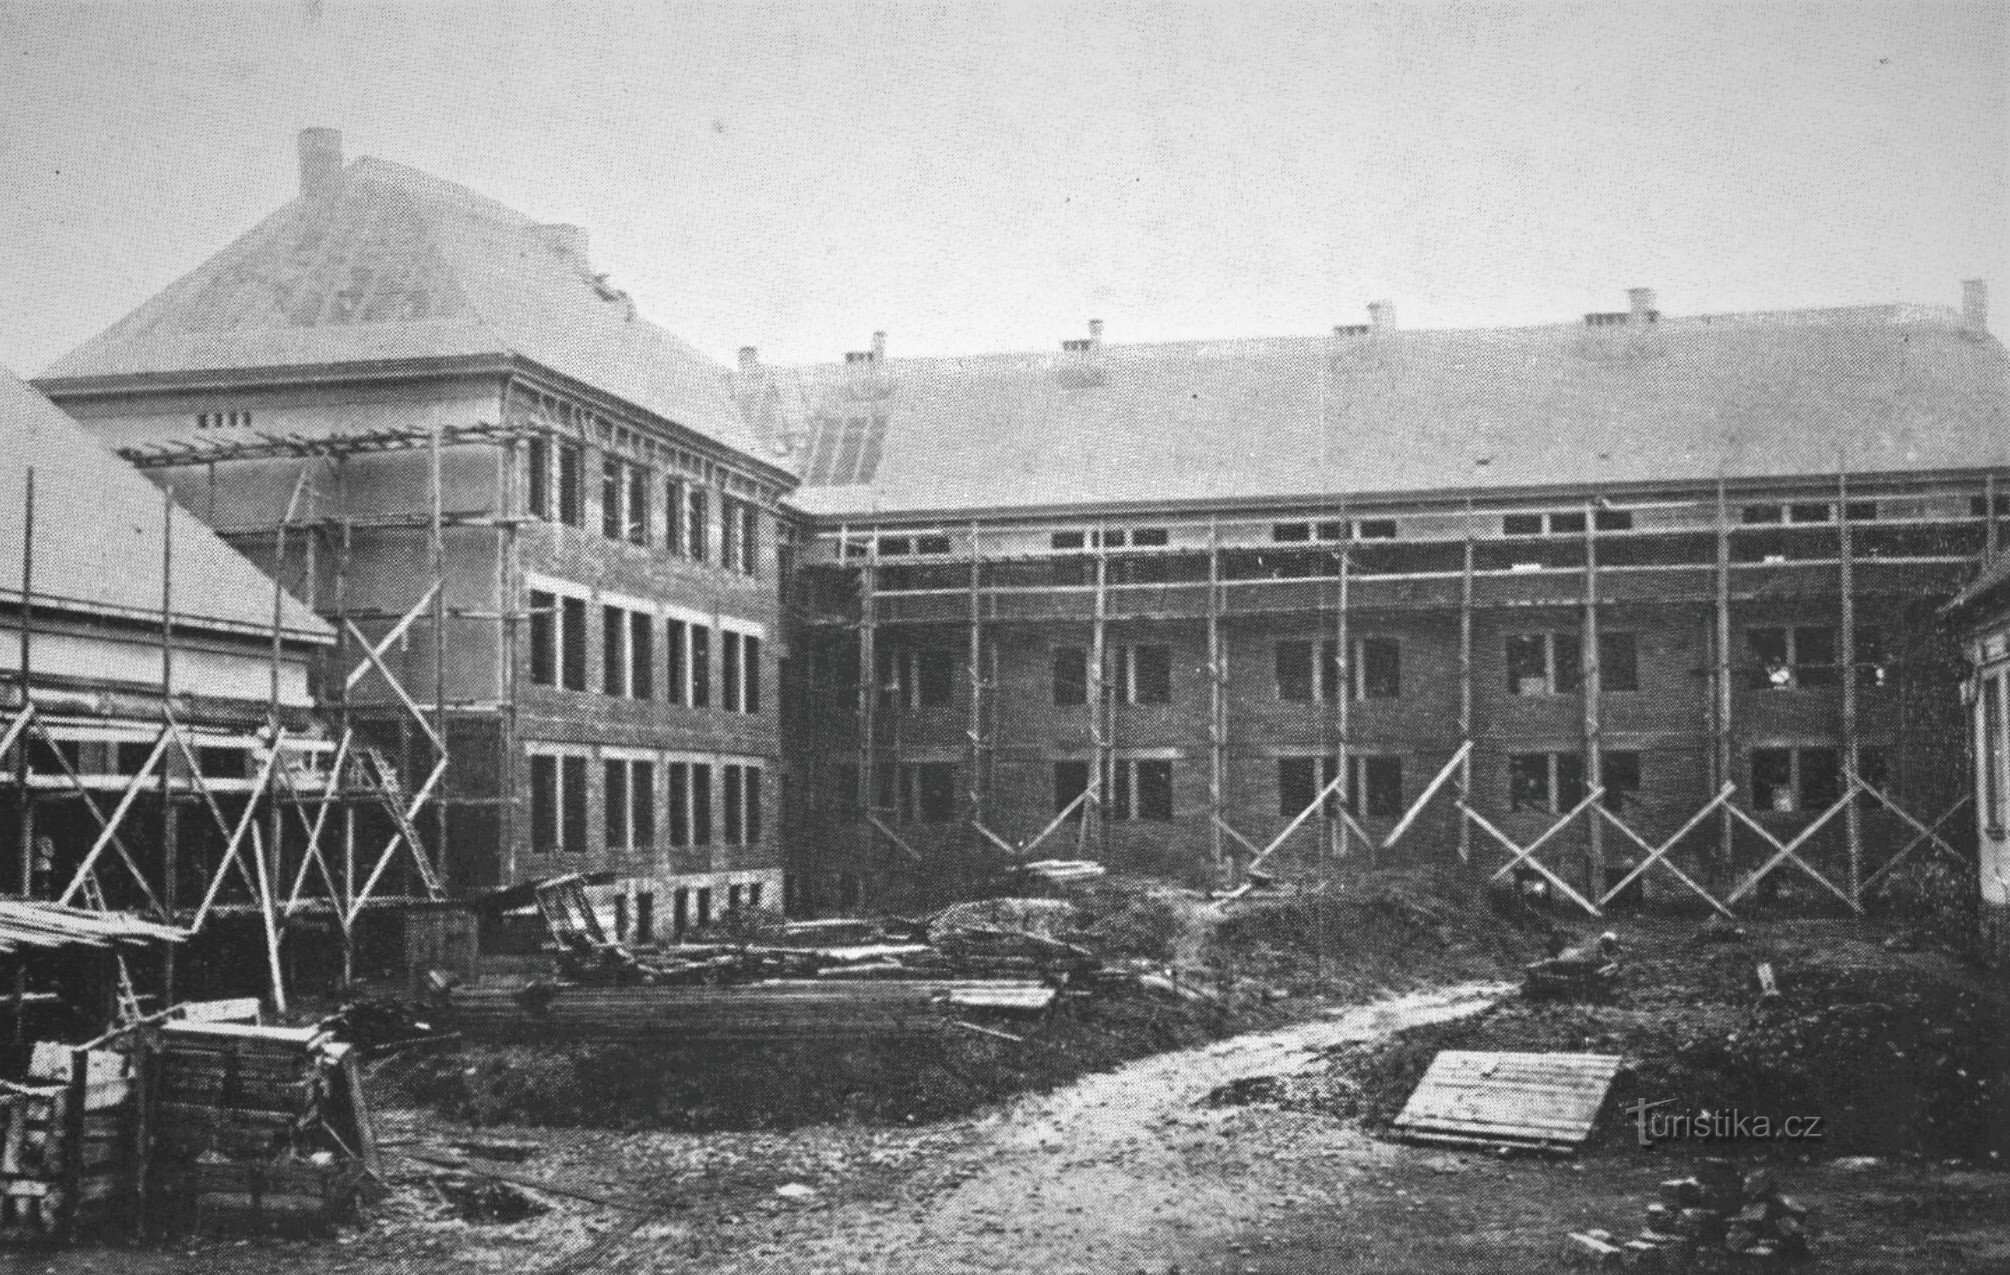 Trutnov ingatlan építése (1927)